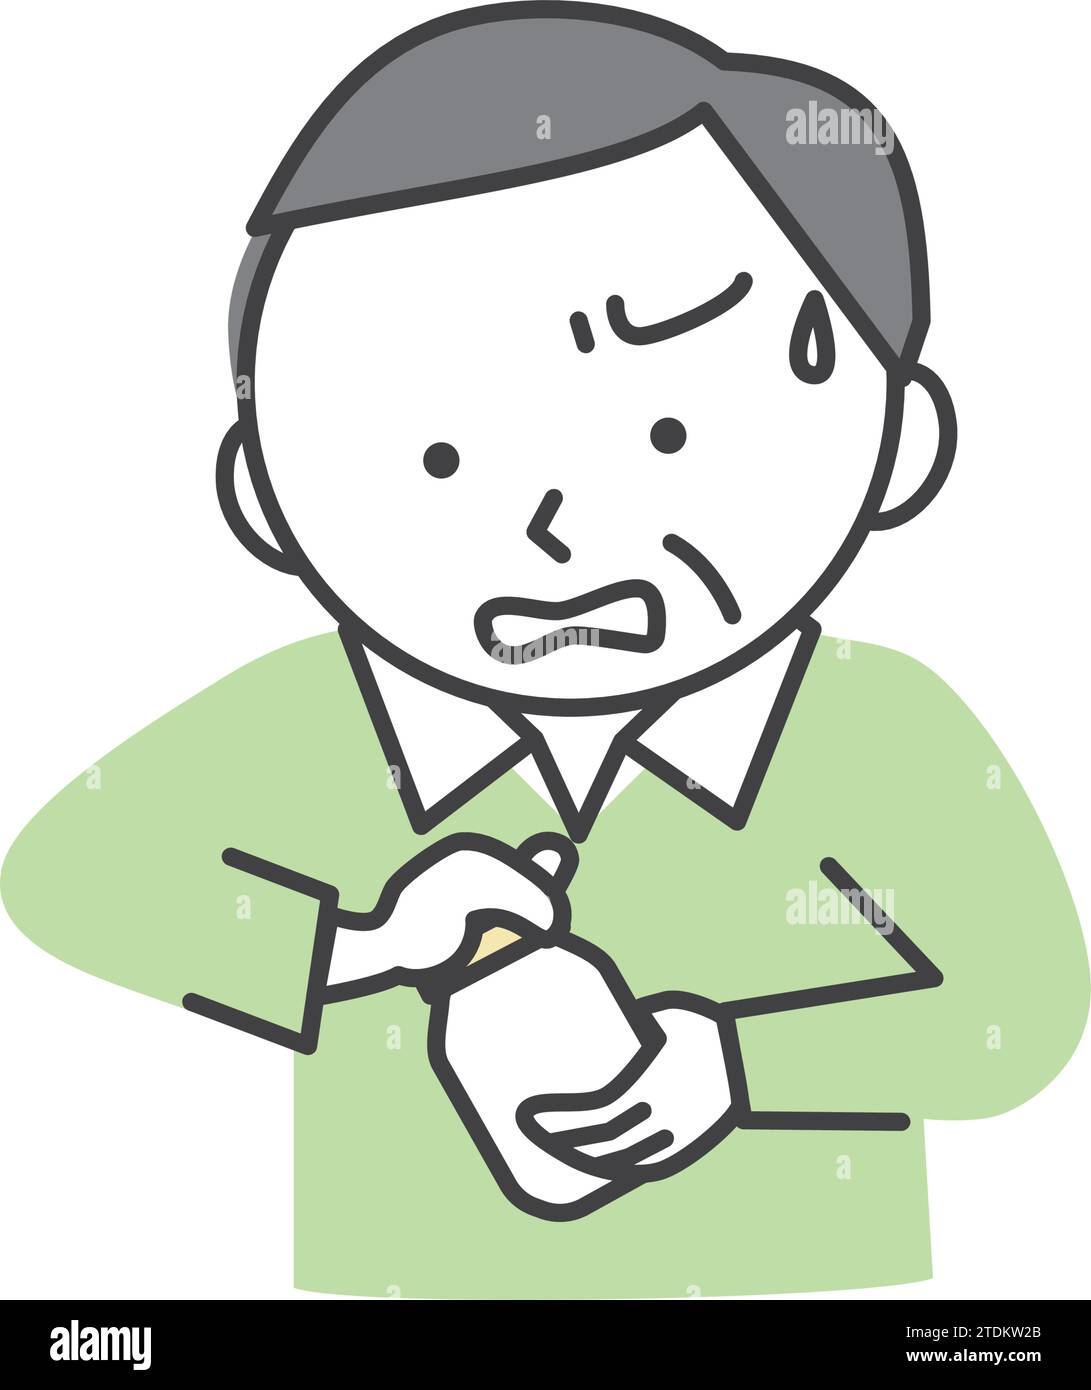 Senior man kann den Flaschenverschluss aufgrund der schwachen Grifffestigkeit nicht öffnen. Eine einfache und süße Illustration im Zeichentrickstil. Stock Vektor